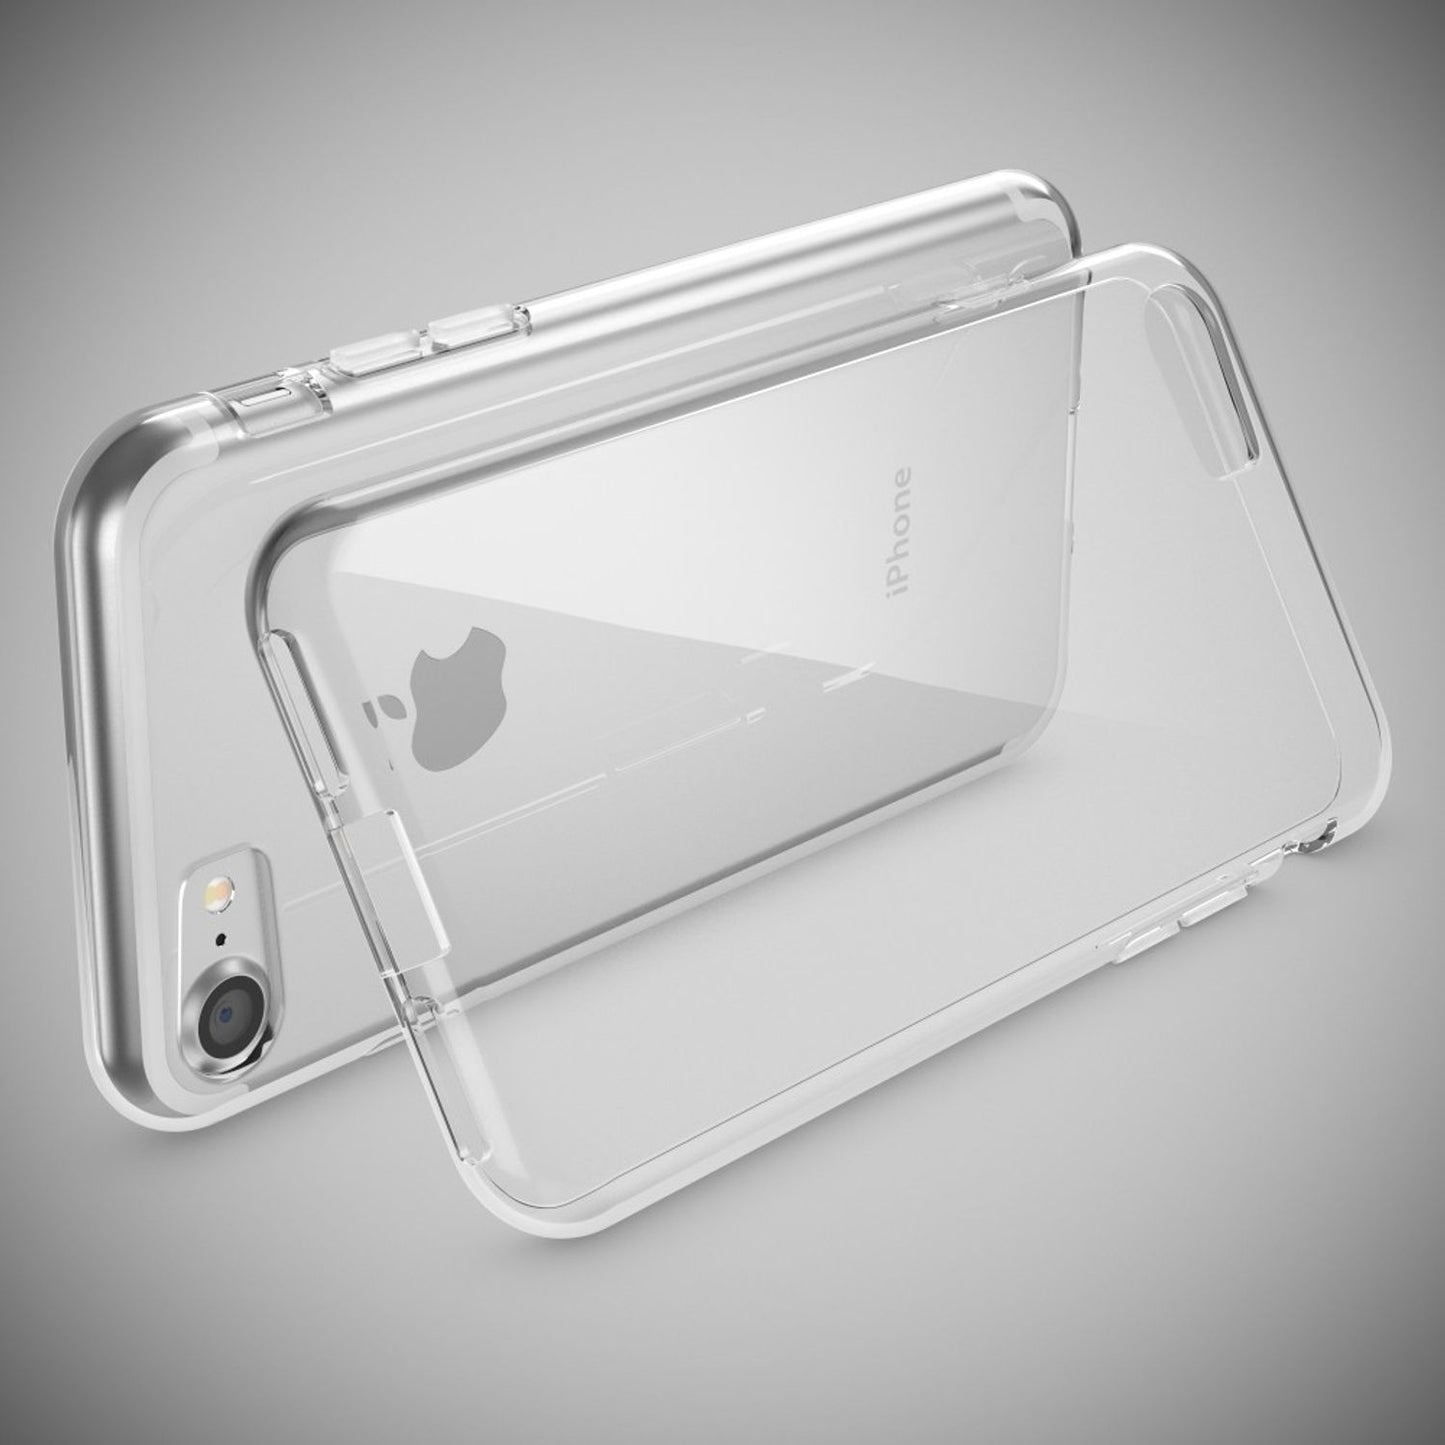 NALIA Handy Hülle für iPhone SE 2022 / SE 2020 / 8 / 7, Silikon Case Cover Etui